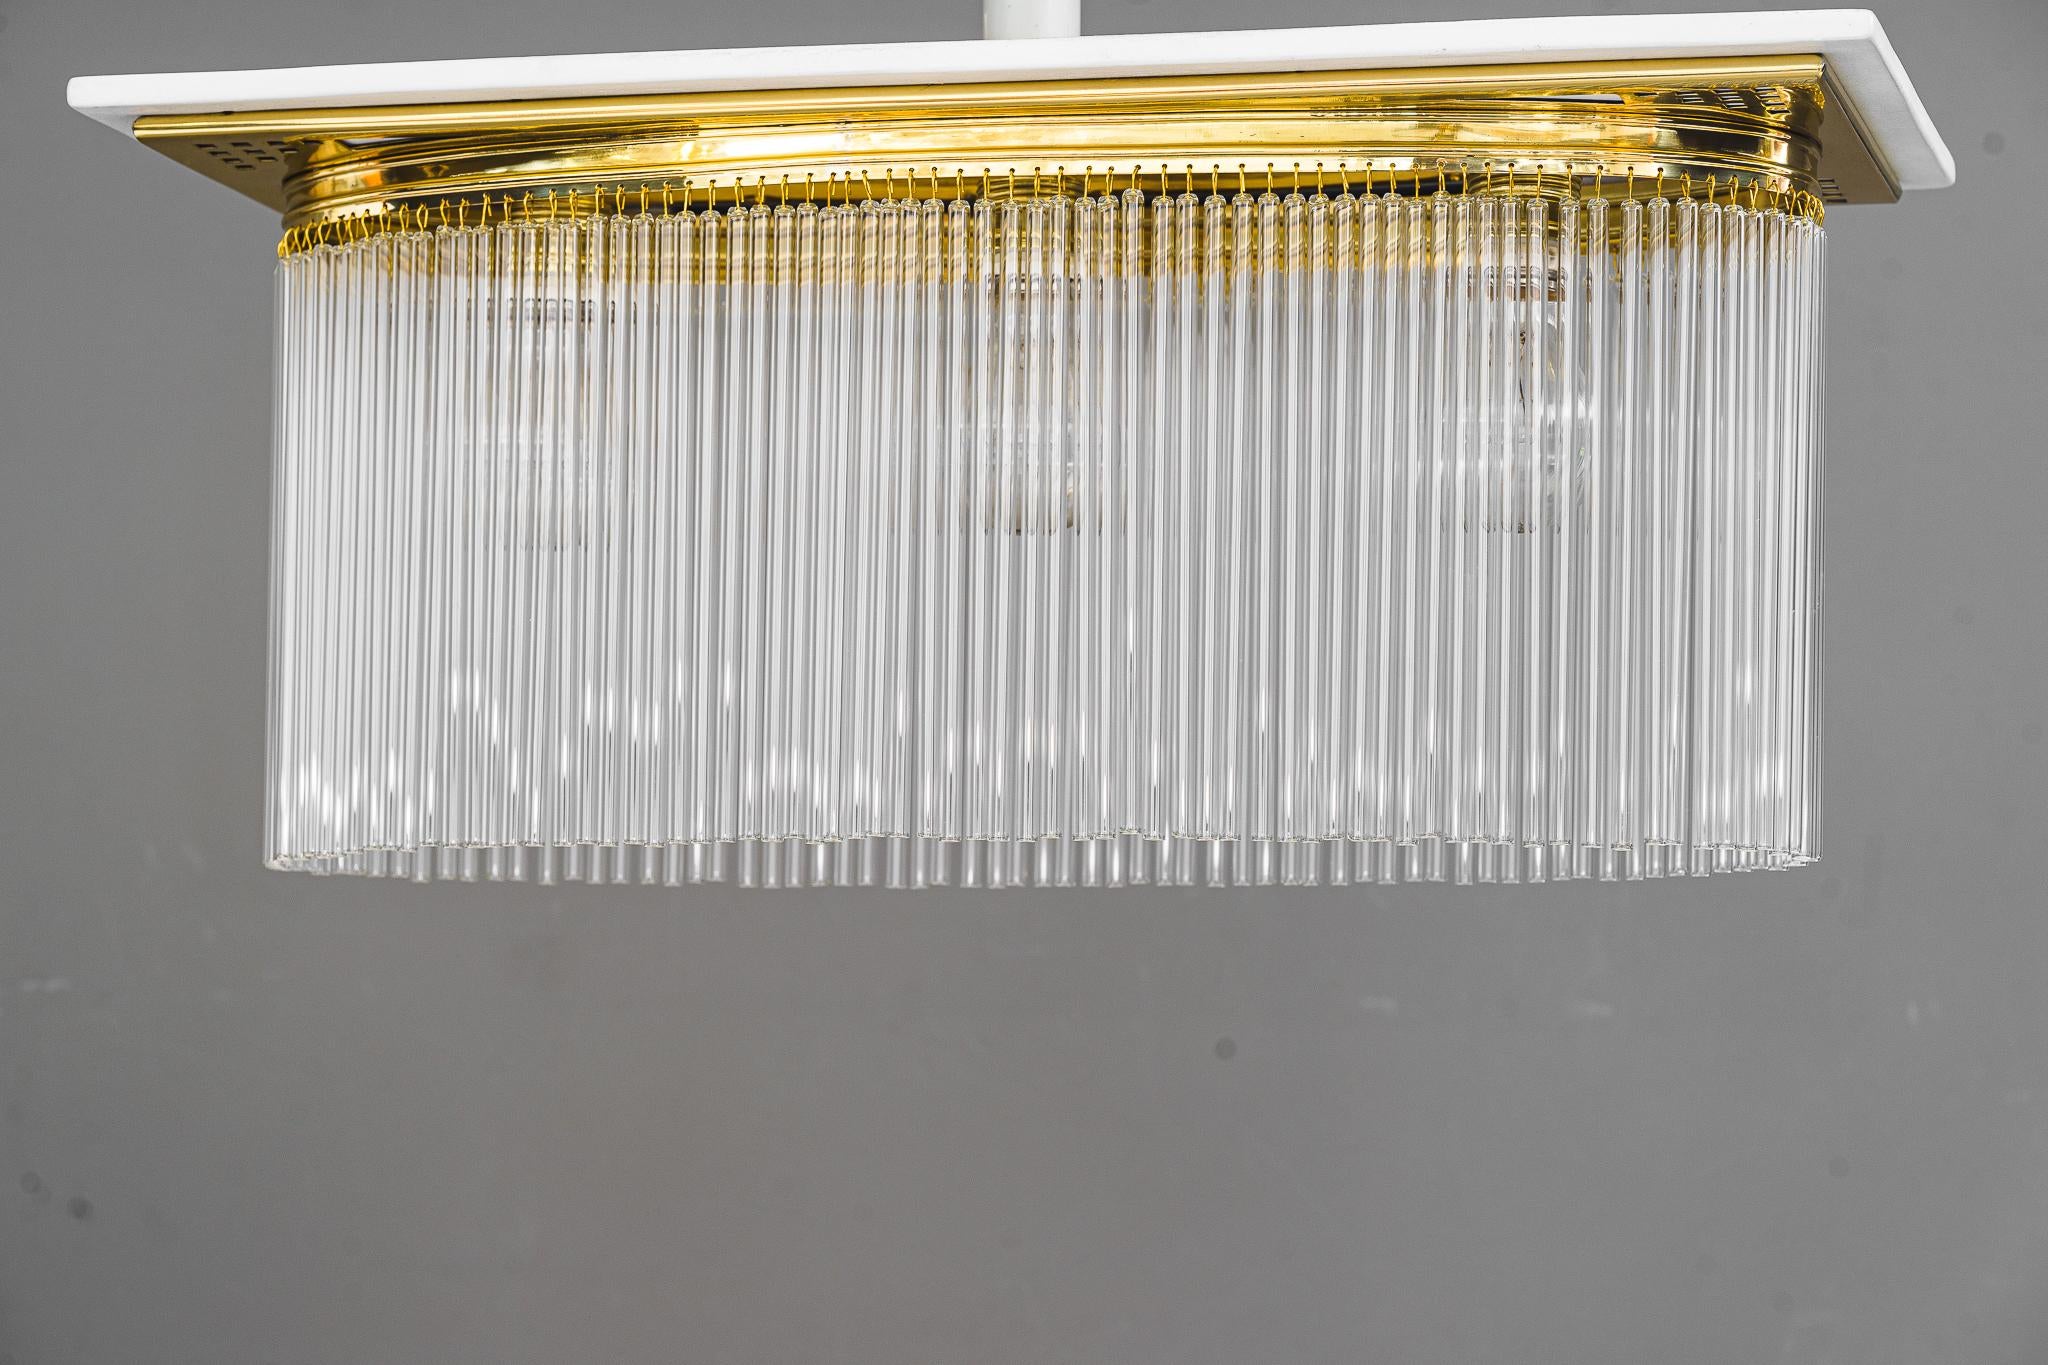 Einbaubeleuchtung im Art déco-Stil mit Glasstiften aus Vienna aus den 1920er Jahren 
Poliert und emailliert
Die Glasstäbe werden ersetzt ( neu )
3 Glühbirnen